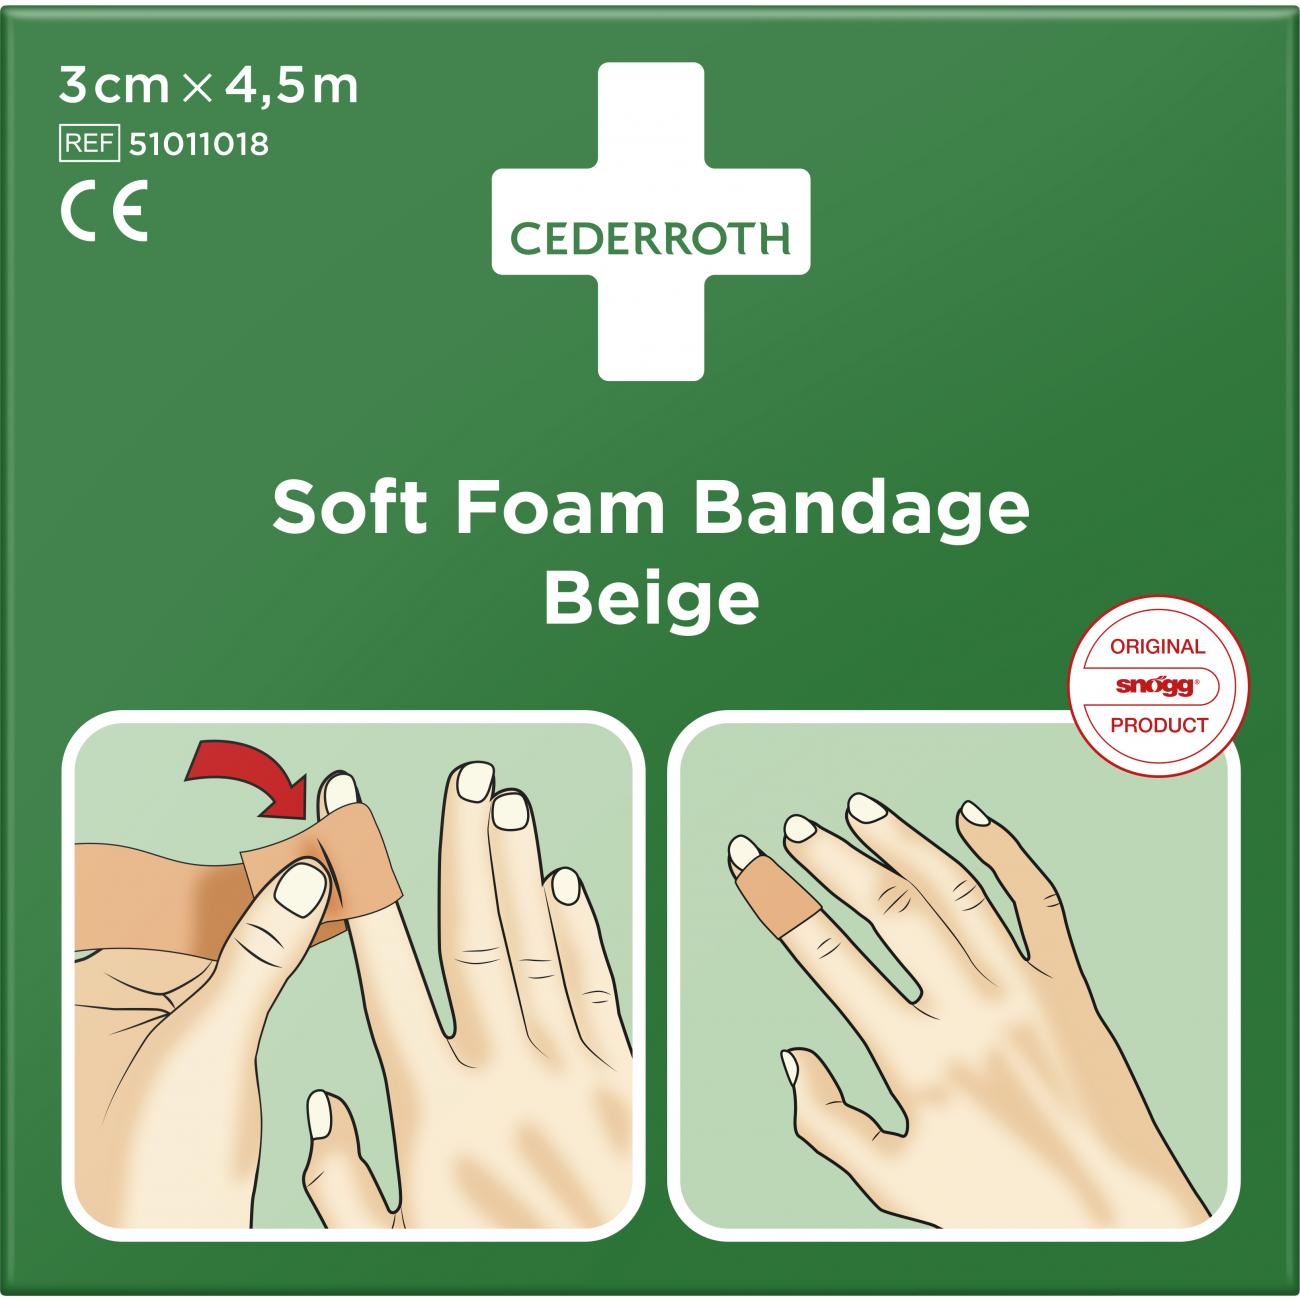 Cederroth Soft Foam Bandage Beige 3 Cm X 4,5 M